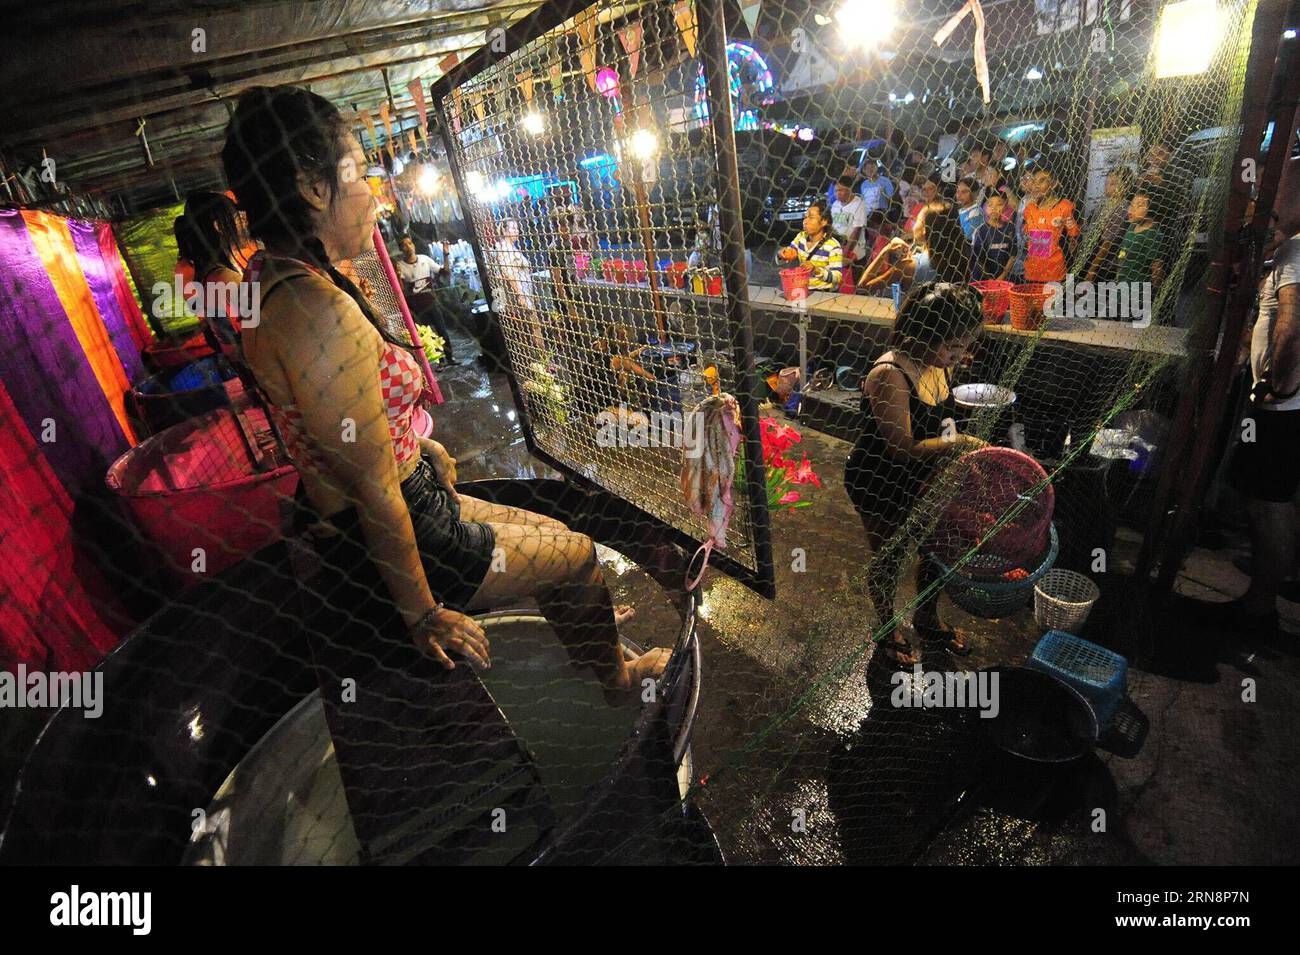 (151101) -- BANGKOK, 1. November 2015 -- Dunk Tank Girls sitzen hinter dem Netz in Bangkok, Thailand, 1. November 2015. Ein Wassertank besteht aus einem Wassertank, über dem ein Freiwilliger auf einem zusammenfallenden Sitz sitzt. Wenn ein Ball auf ein Ziel trifft, bricht der Sitz zusammen und taucht die Person ins Wasser. ) THAILAND-BANGKOK-DUNK TANK GIRL RachenxSageamsak PUBLICATIONxNOTxINxCHN Bangkok Nov 1 2015 Dunk Tank Girls sitzen hinter dem Netz in Bangkok Thai Country Nov 1 2015 ein Dunk Tank besteht aus einem Tank mit Wasser, über dem ein Freiwilliger AUF einem zusammenfallenden Sitz sitzt, wenn ein Ball AUF ein Ziel trifft der Sitz kollabiert und die Person int Stockfoto